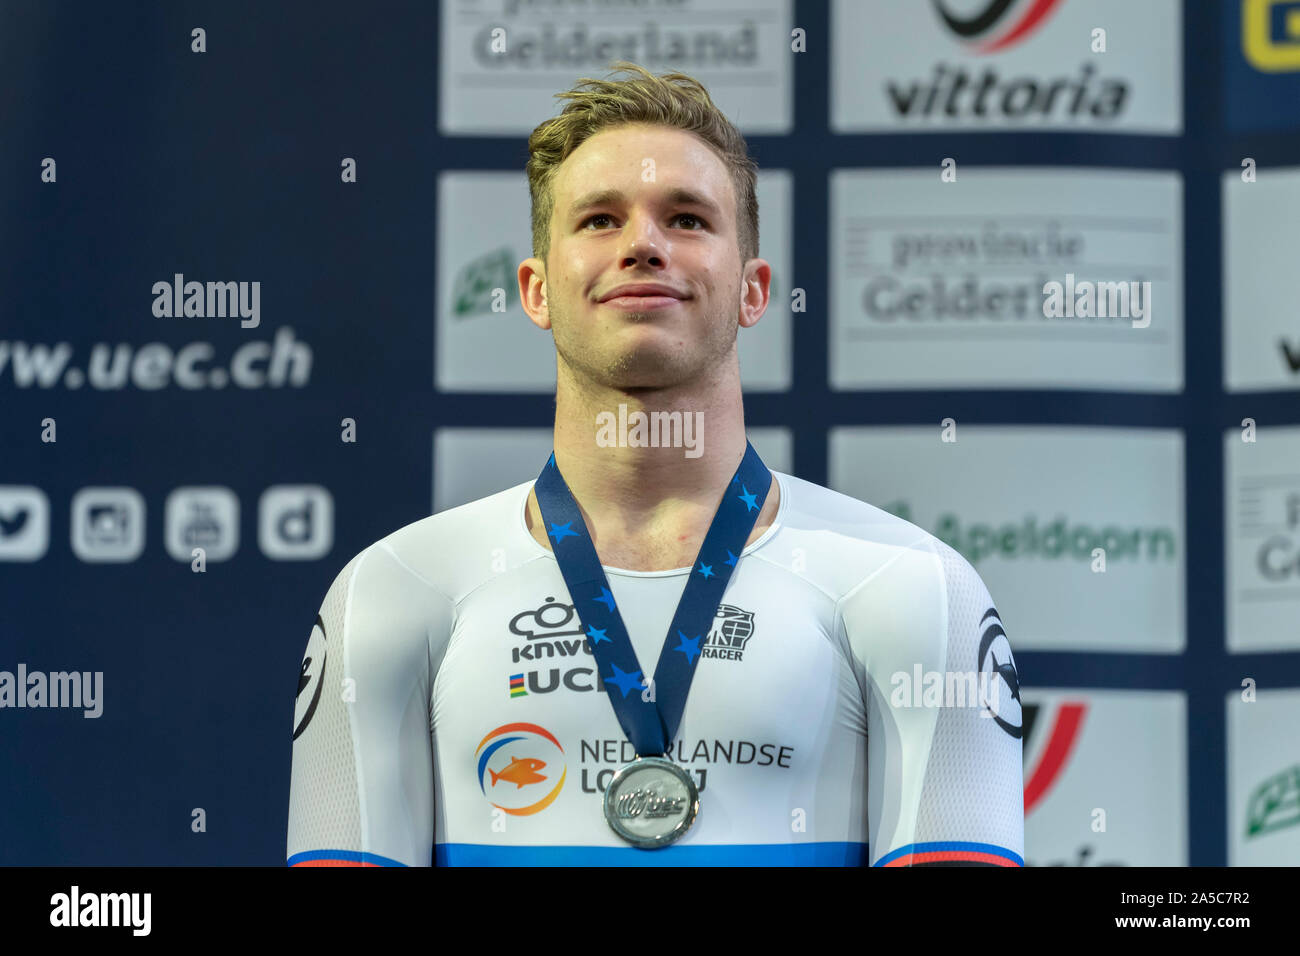 Harrie Lavreysen (NED) beim UEC Titel Radfahren Europäische Meisterschaft am Oktober, 18 2019 in Apeldoorn, Niederlande. (Foto von SCS/Sander Chamid) Stockfoto